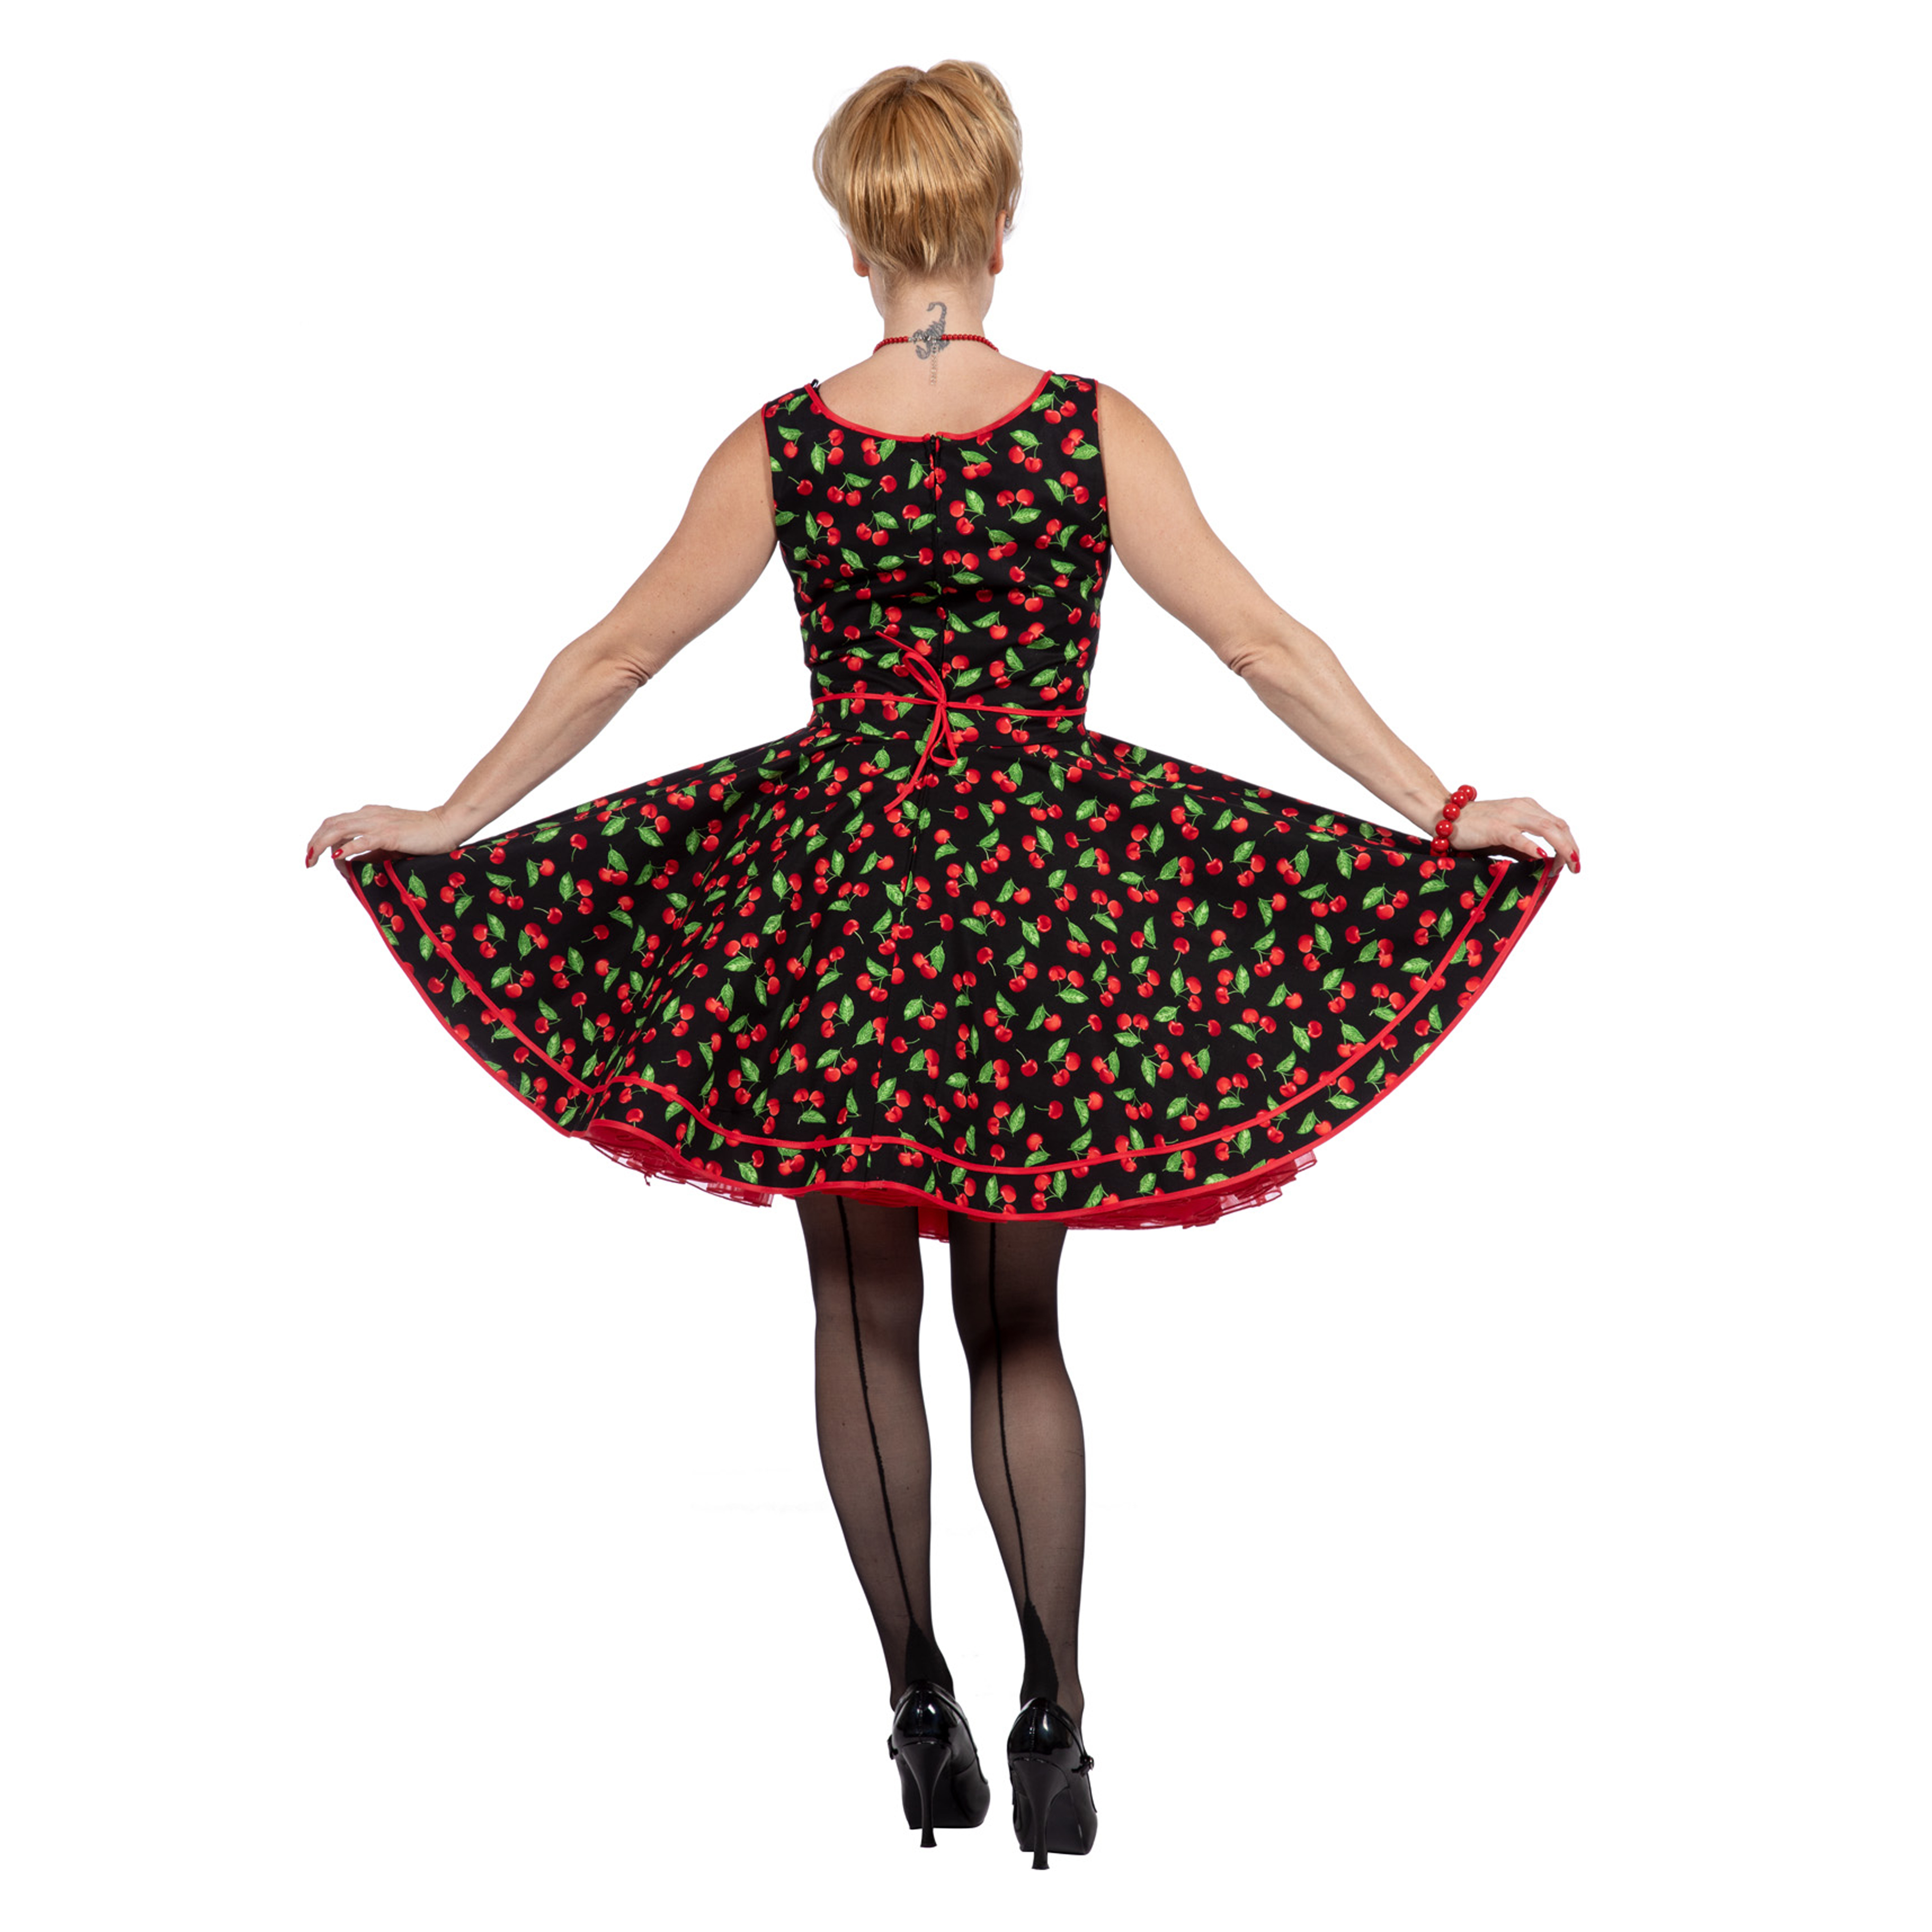 Premium-Line Damen-Kleid Rockabilly Cherry, Gr. 36 Bild 3